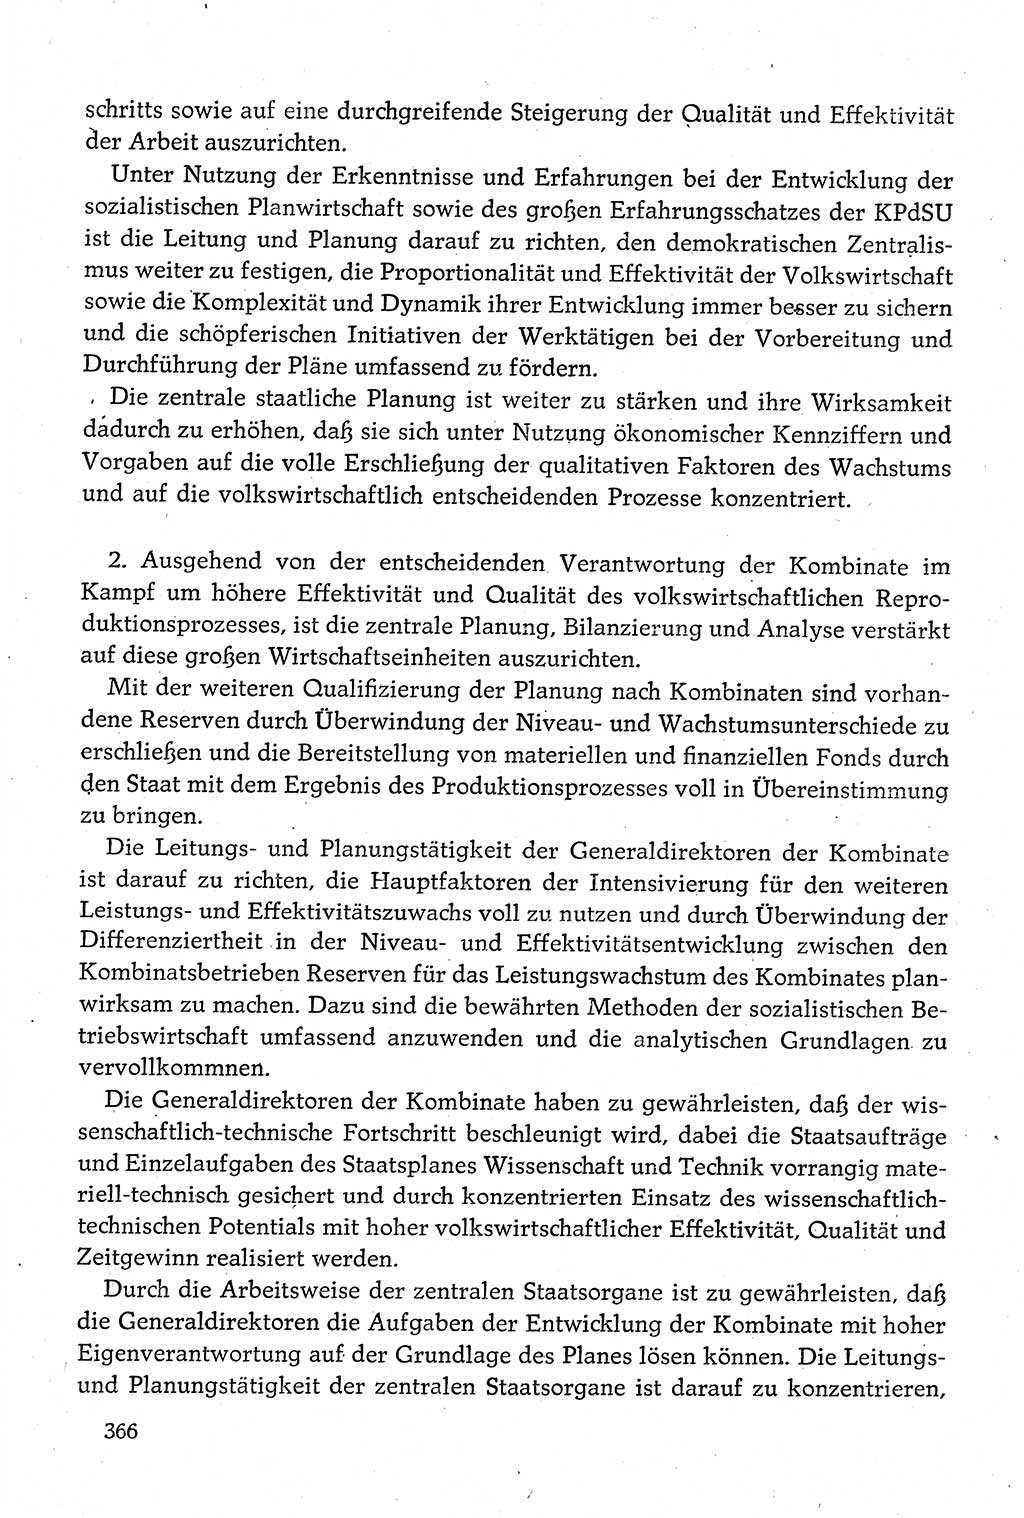 Dokumente der Sozialistischen Einheitspartei Deutschlands (SED) [Deutsche Demokratische Republik (DDR)] 1980-1981, Seite 366 (Dok. SED DDR 1980-1981, S. 366)